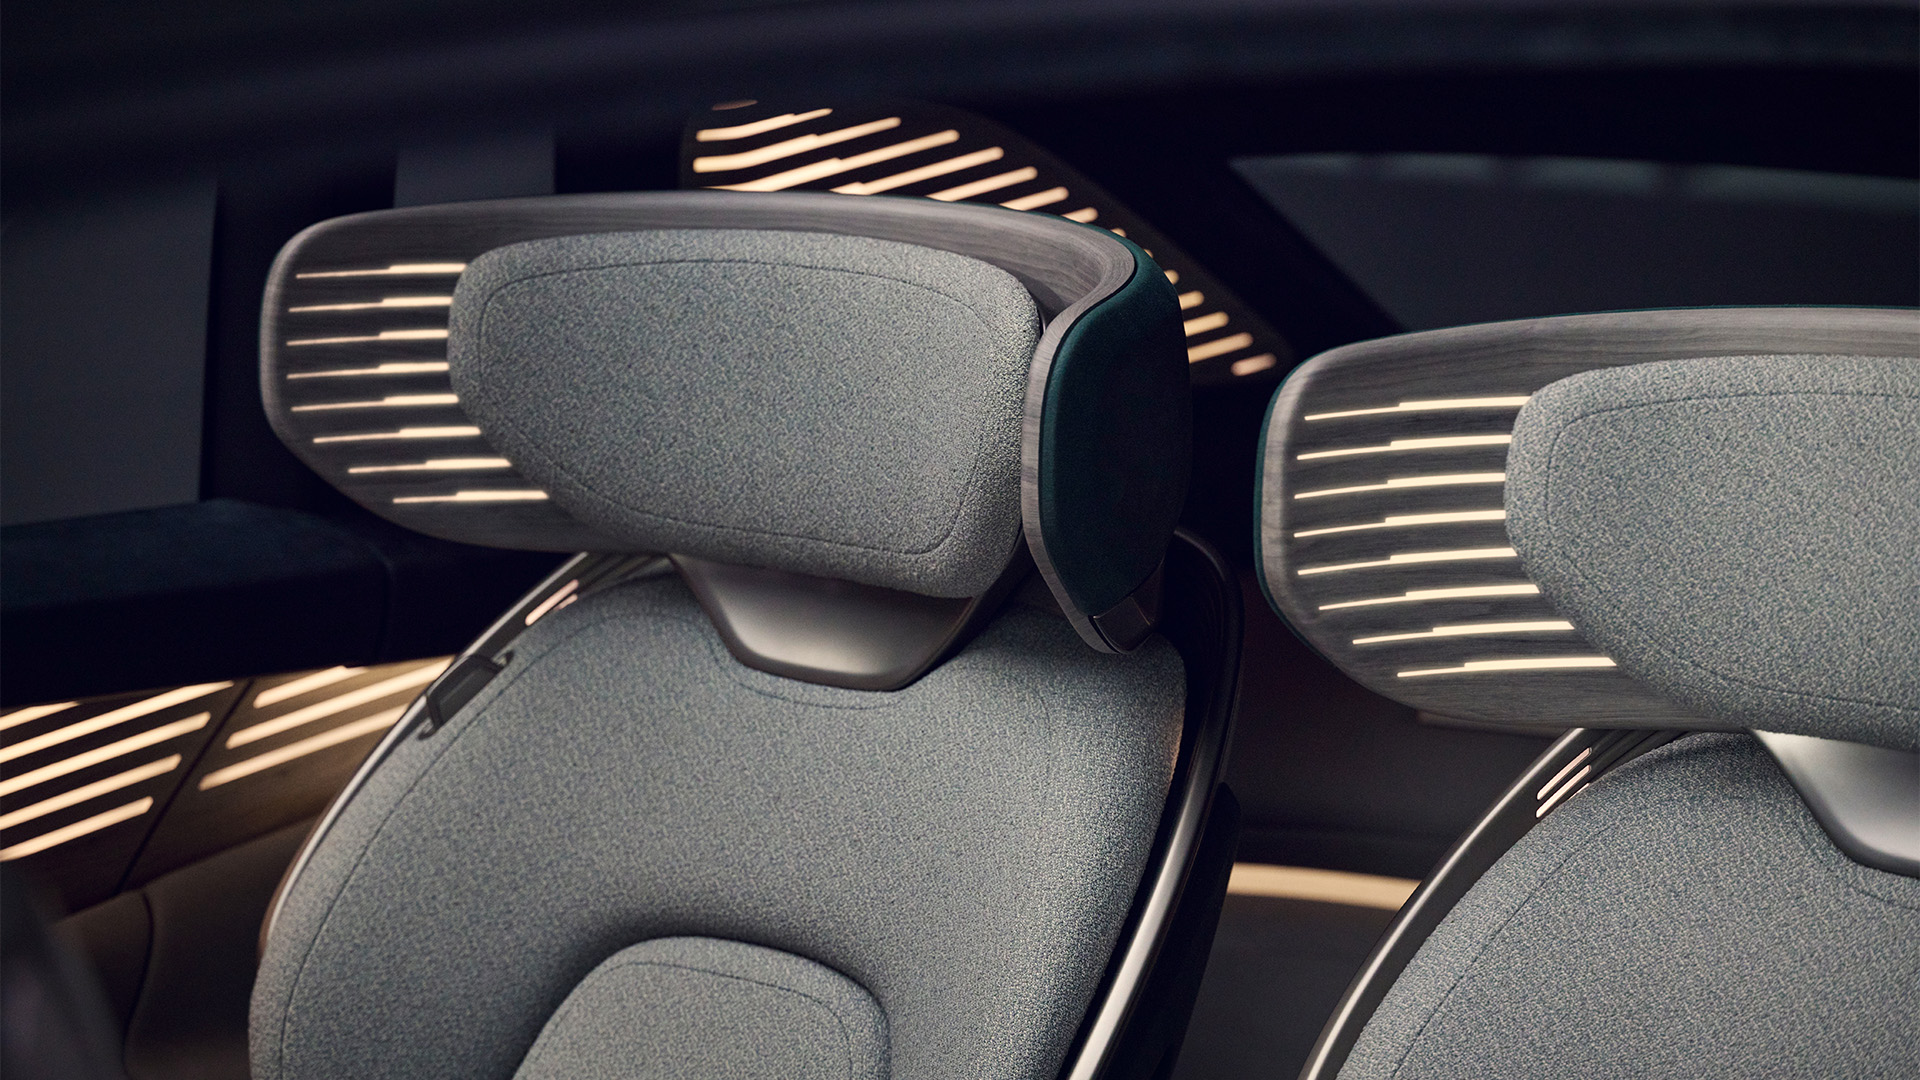 Eine Nahaufnahme zweier Sitze des Audi urbansphere concept mit Lichtelementen im Kopfstützenbereich.